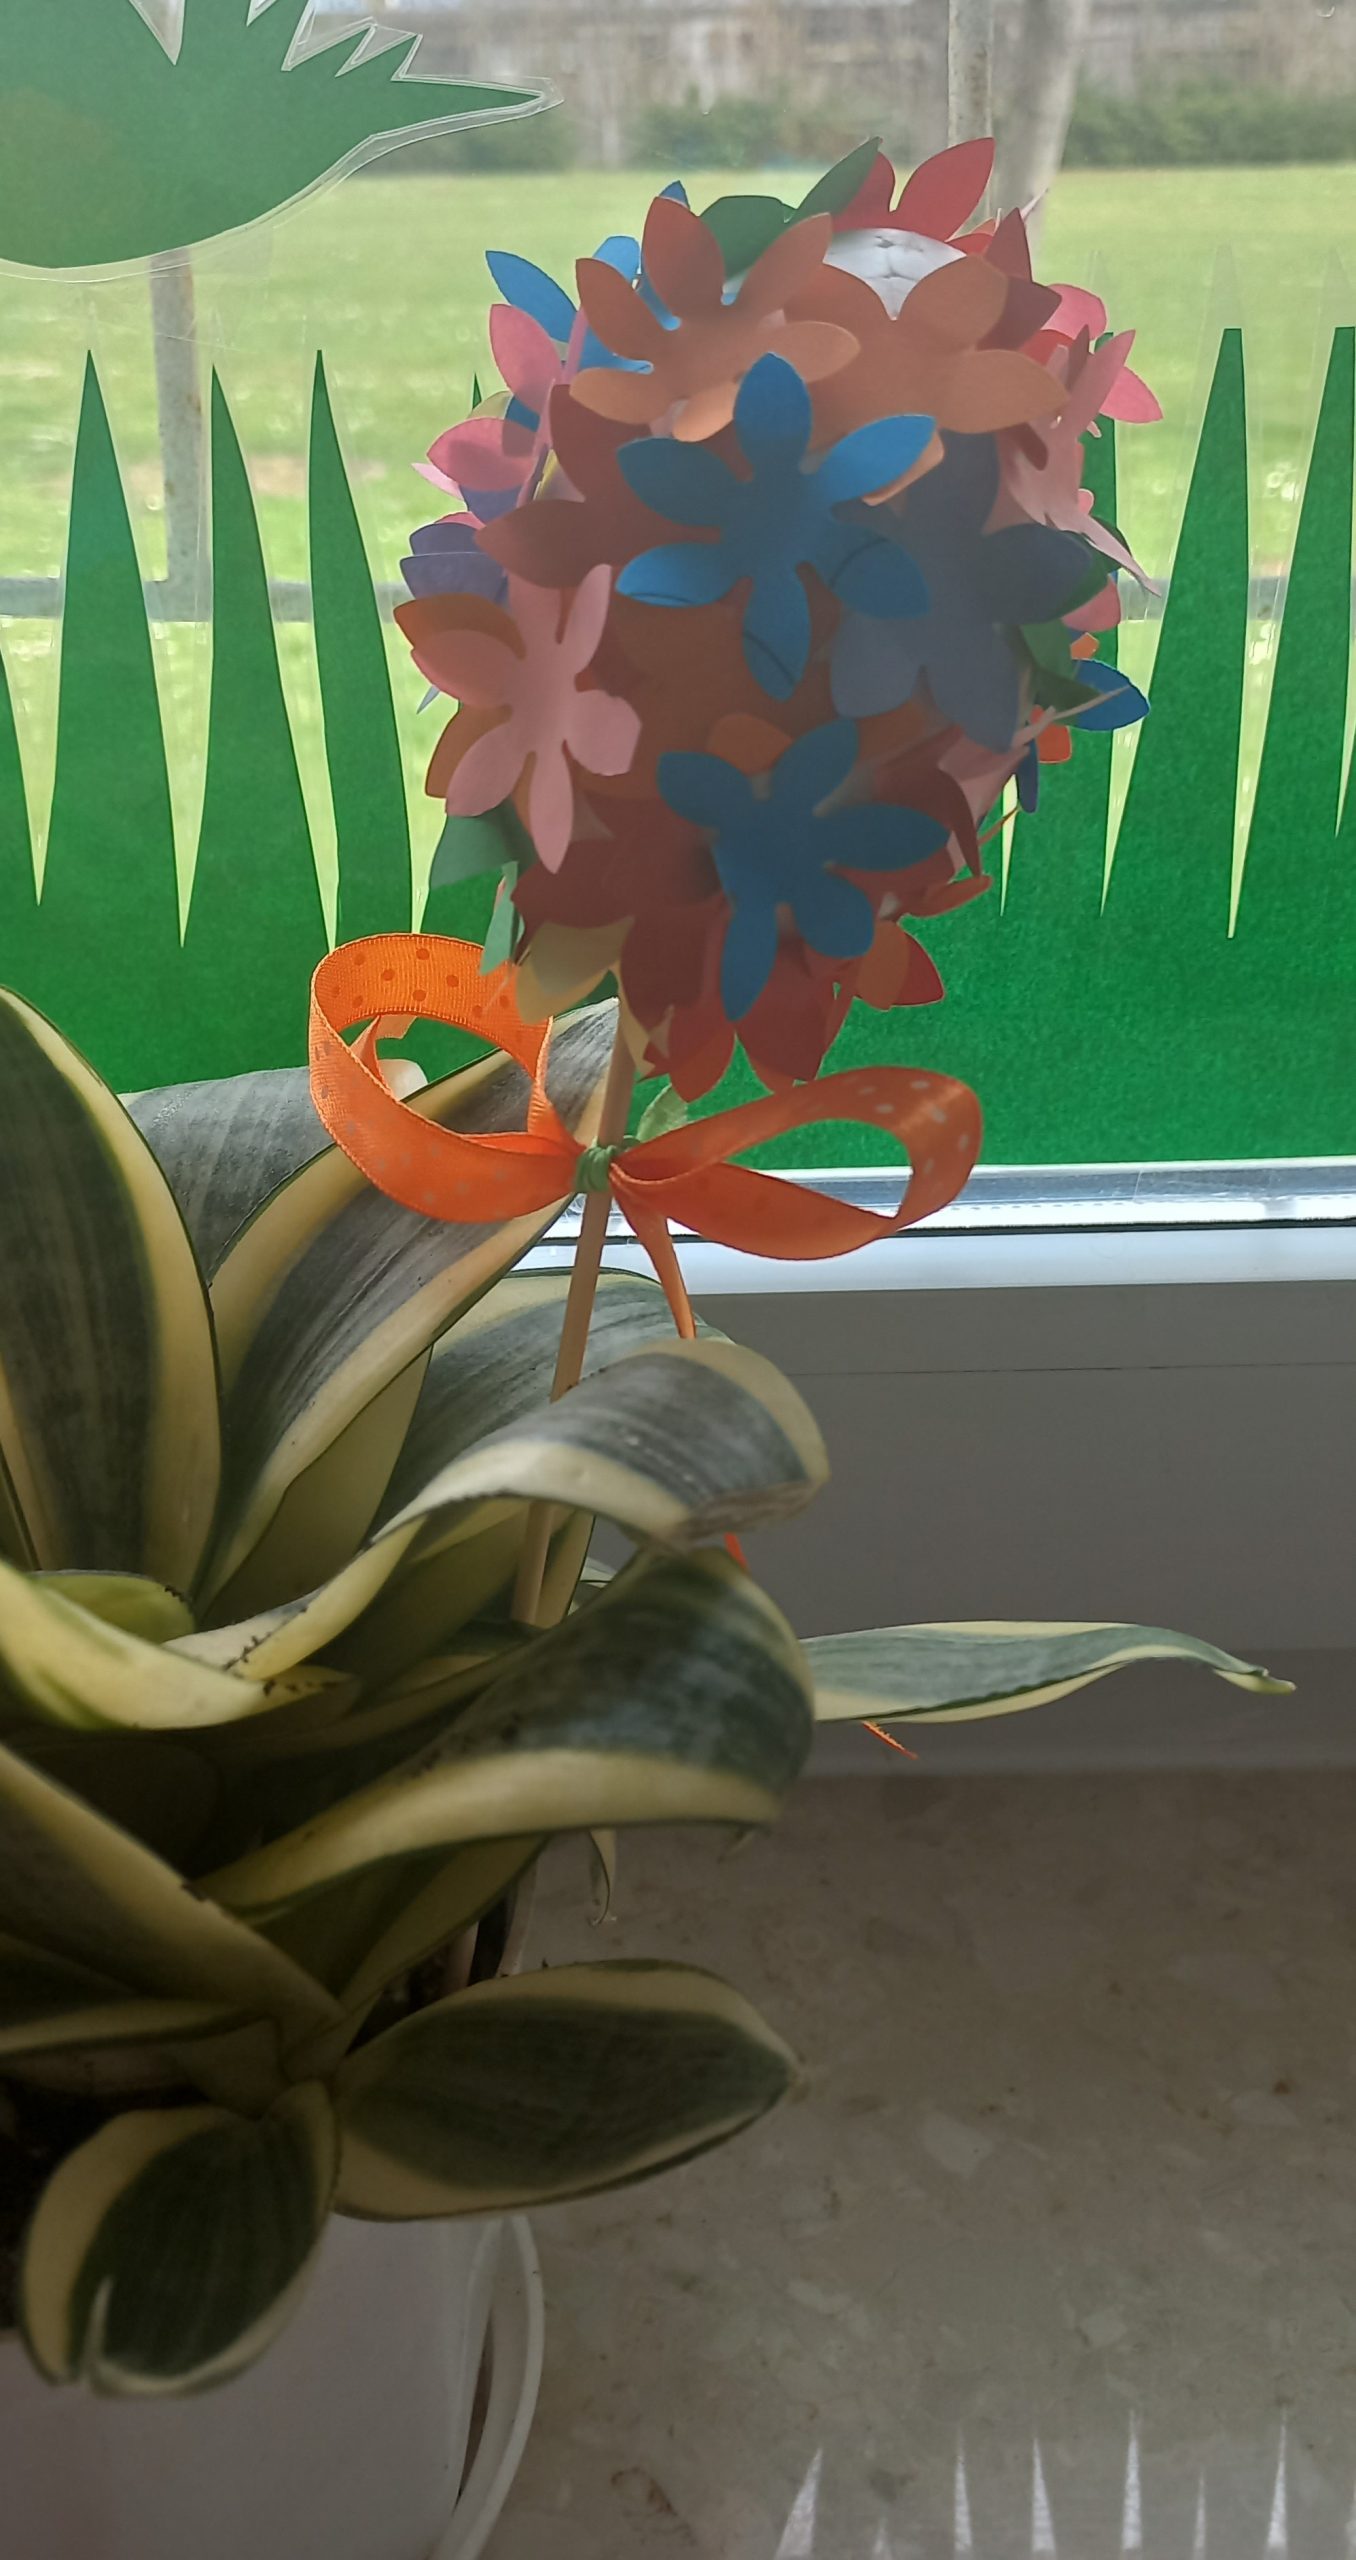 Doniczka z kwiatem w kształcie zielonych liści. W doniczce na długiej wykałaczce pisanka z kolorowymi kwiatami z papieru.